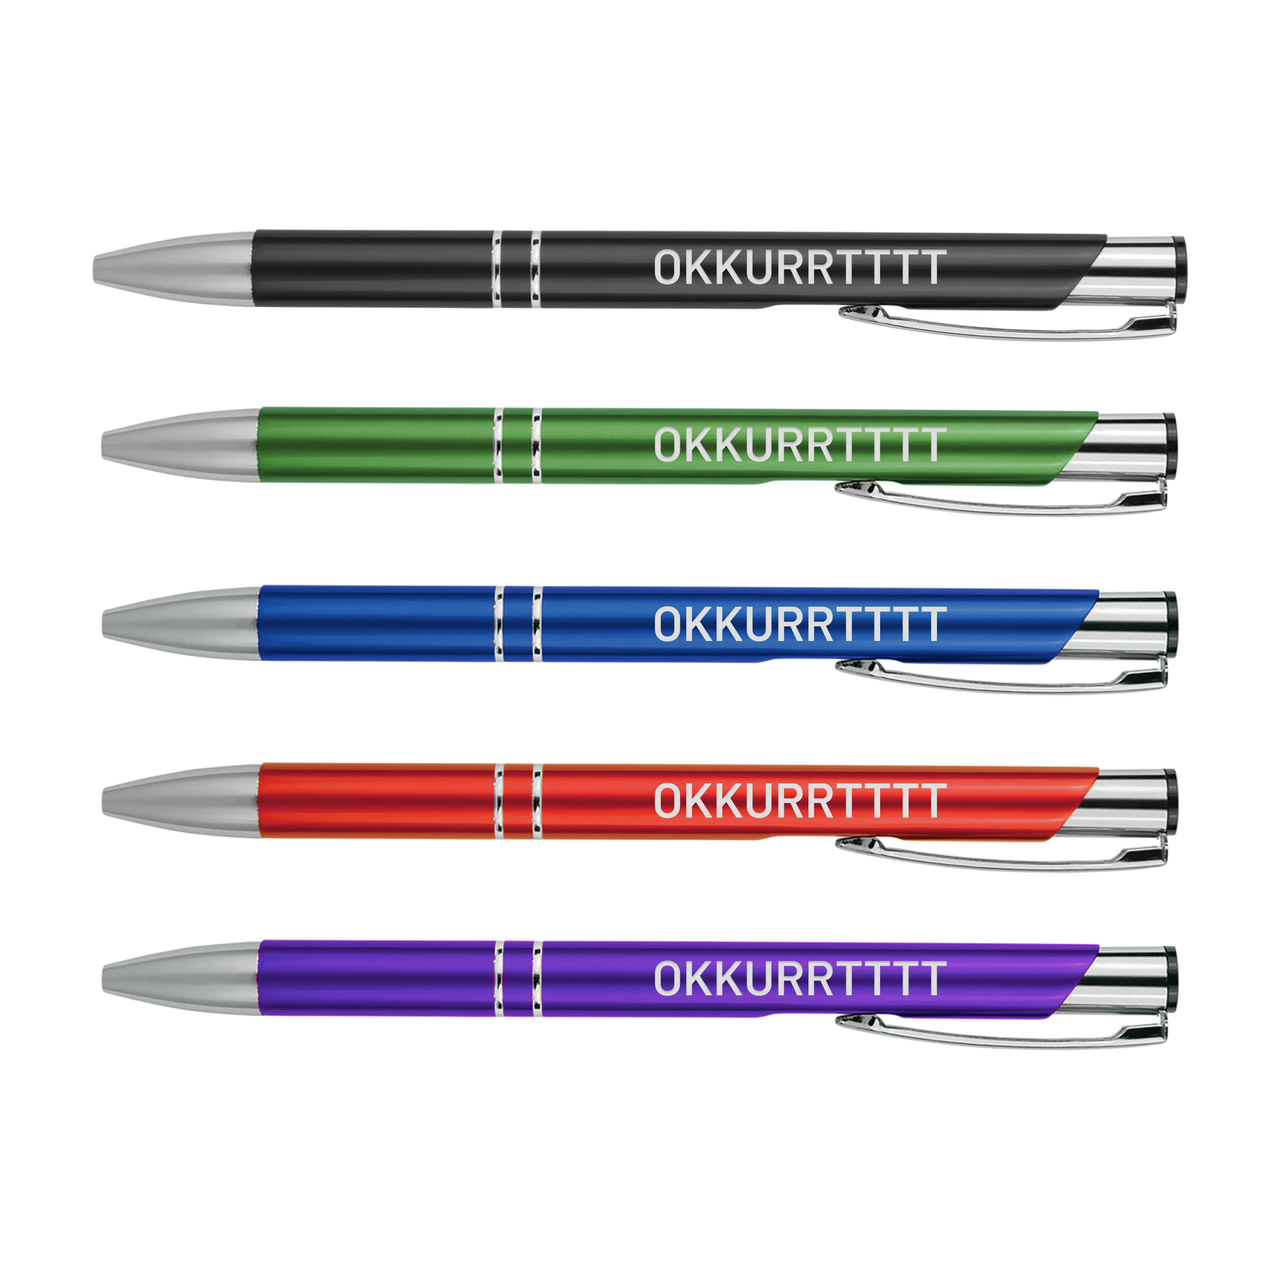 Okkurrtttt Metal Pens | Motivational Writing Tools Office Supplies Coworker Gifts Stocking Stuffer Baum Designs